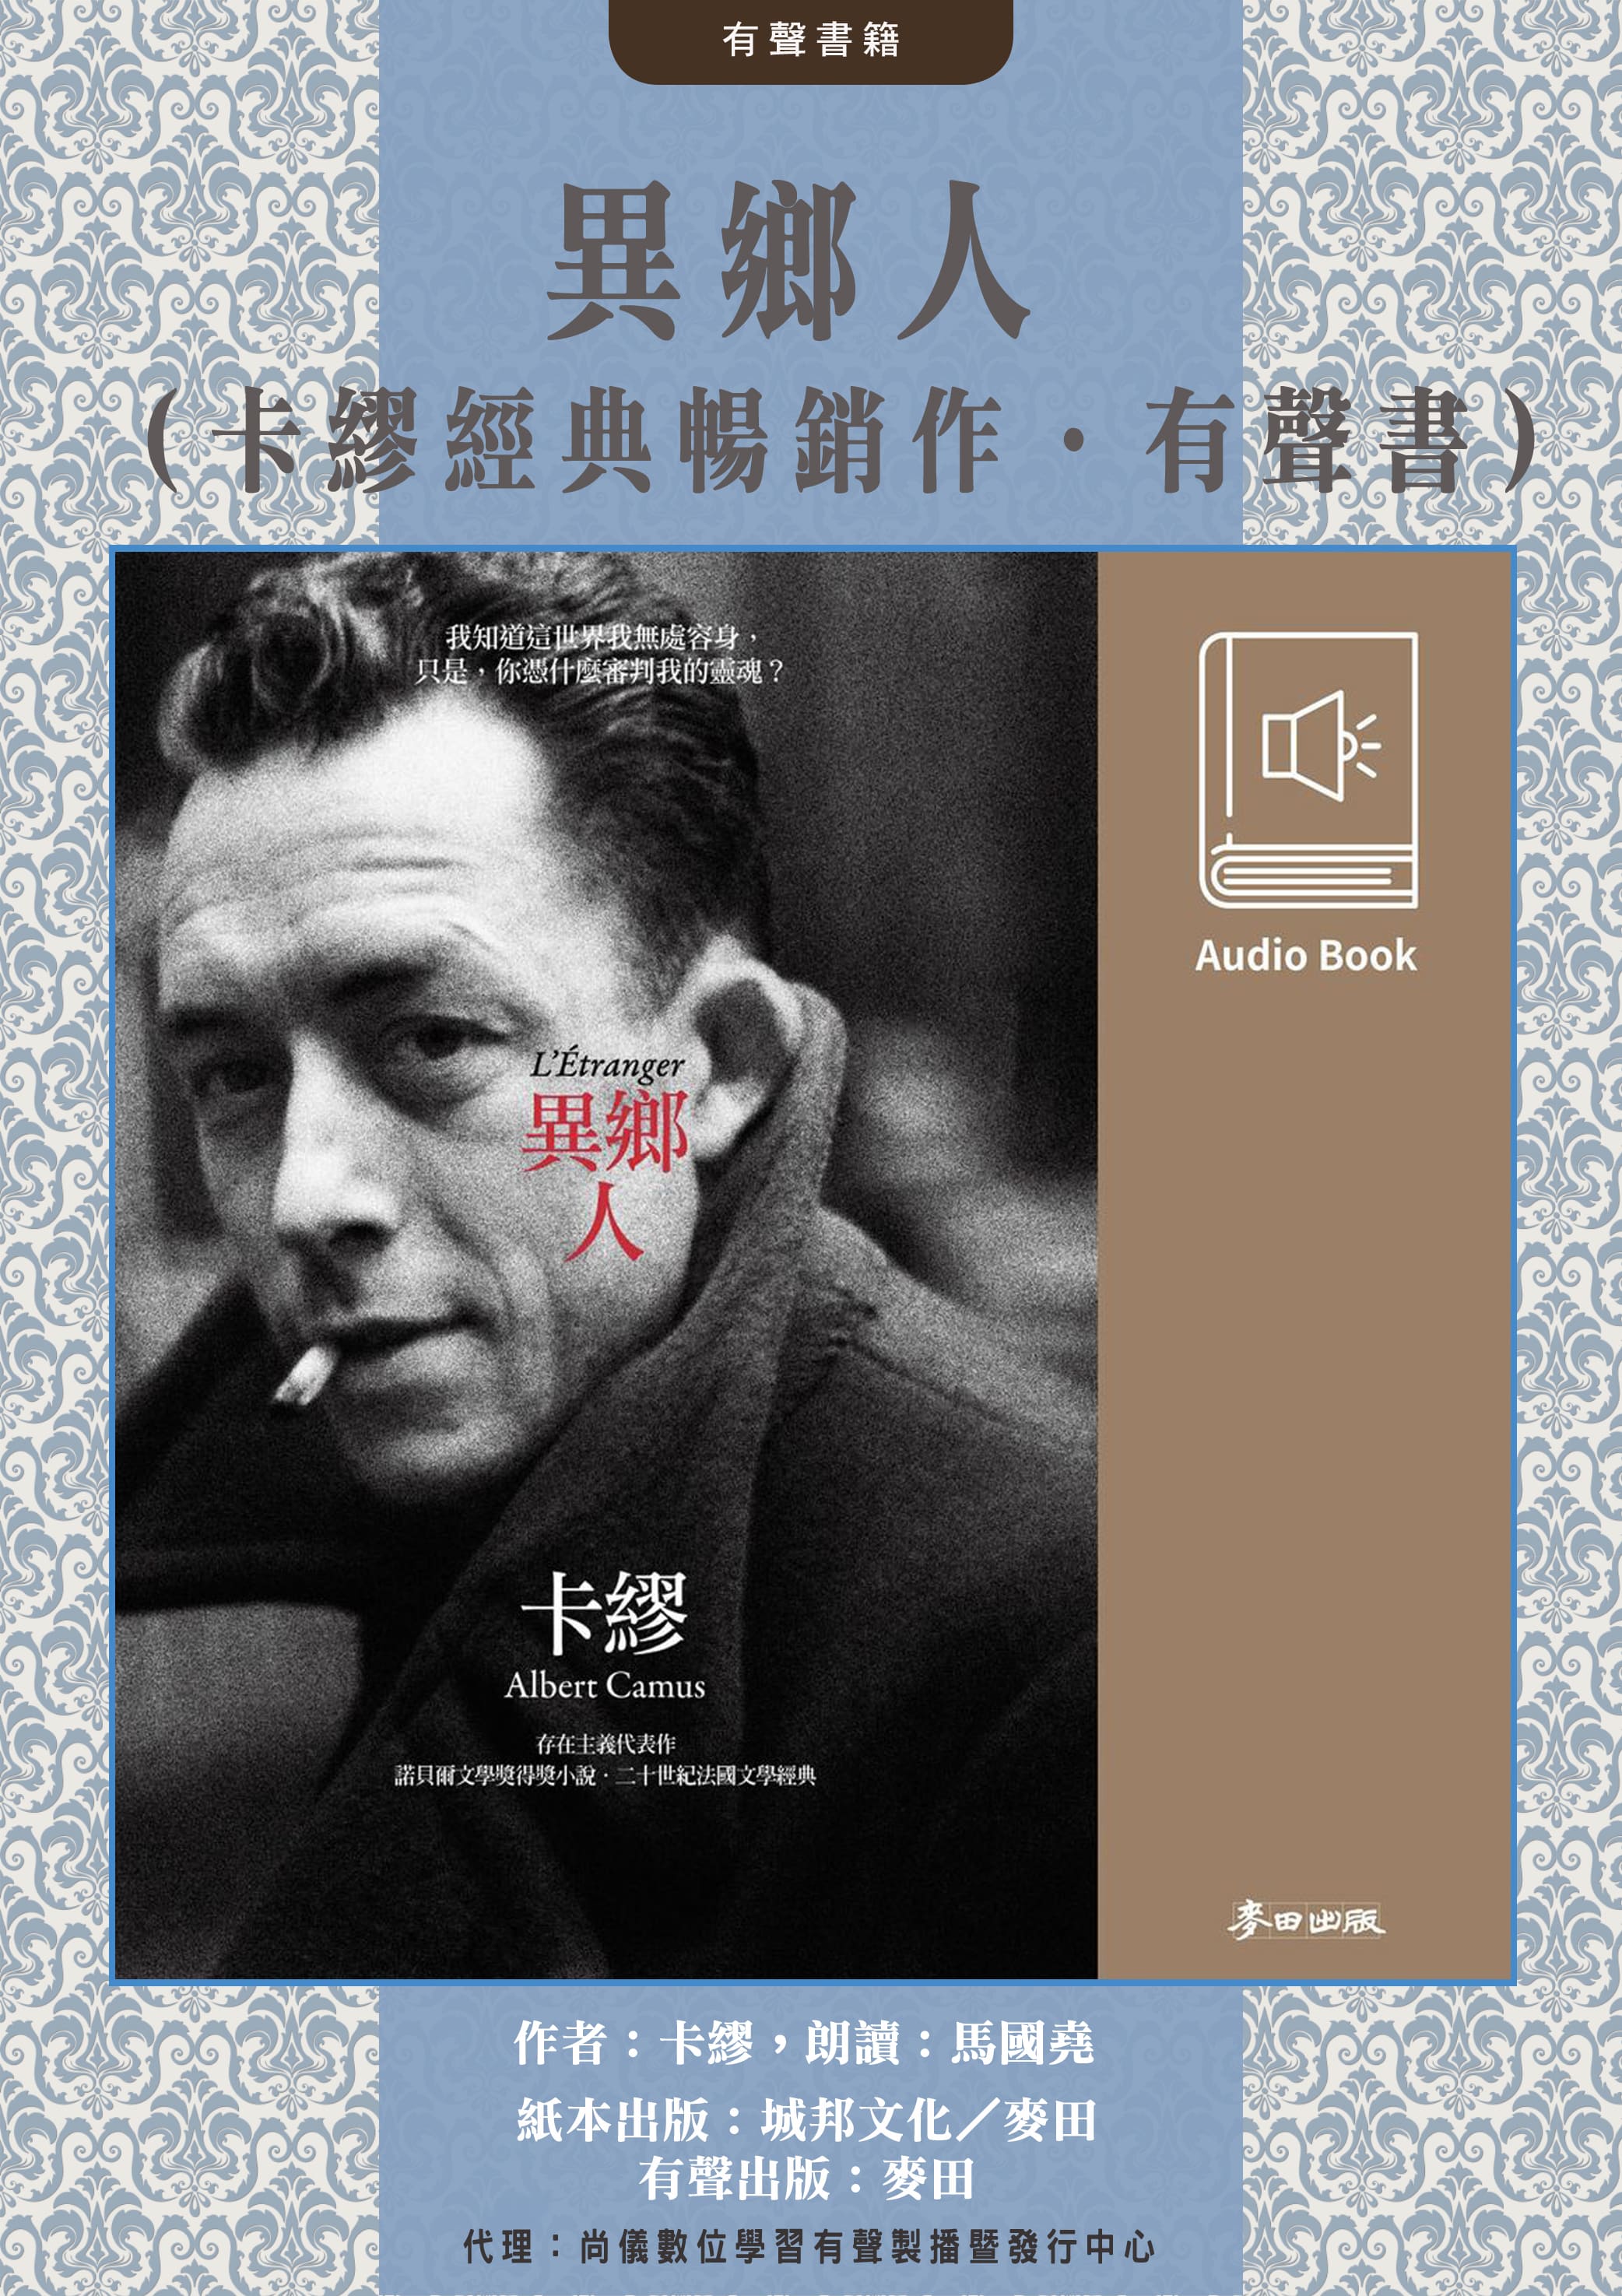 異鄉人（卡繆經典暢銷作․中文版有聲書首度上市）封面圖